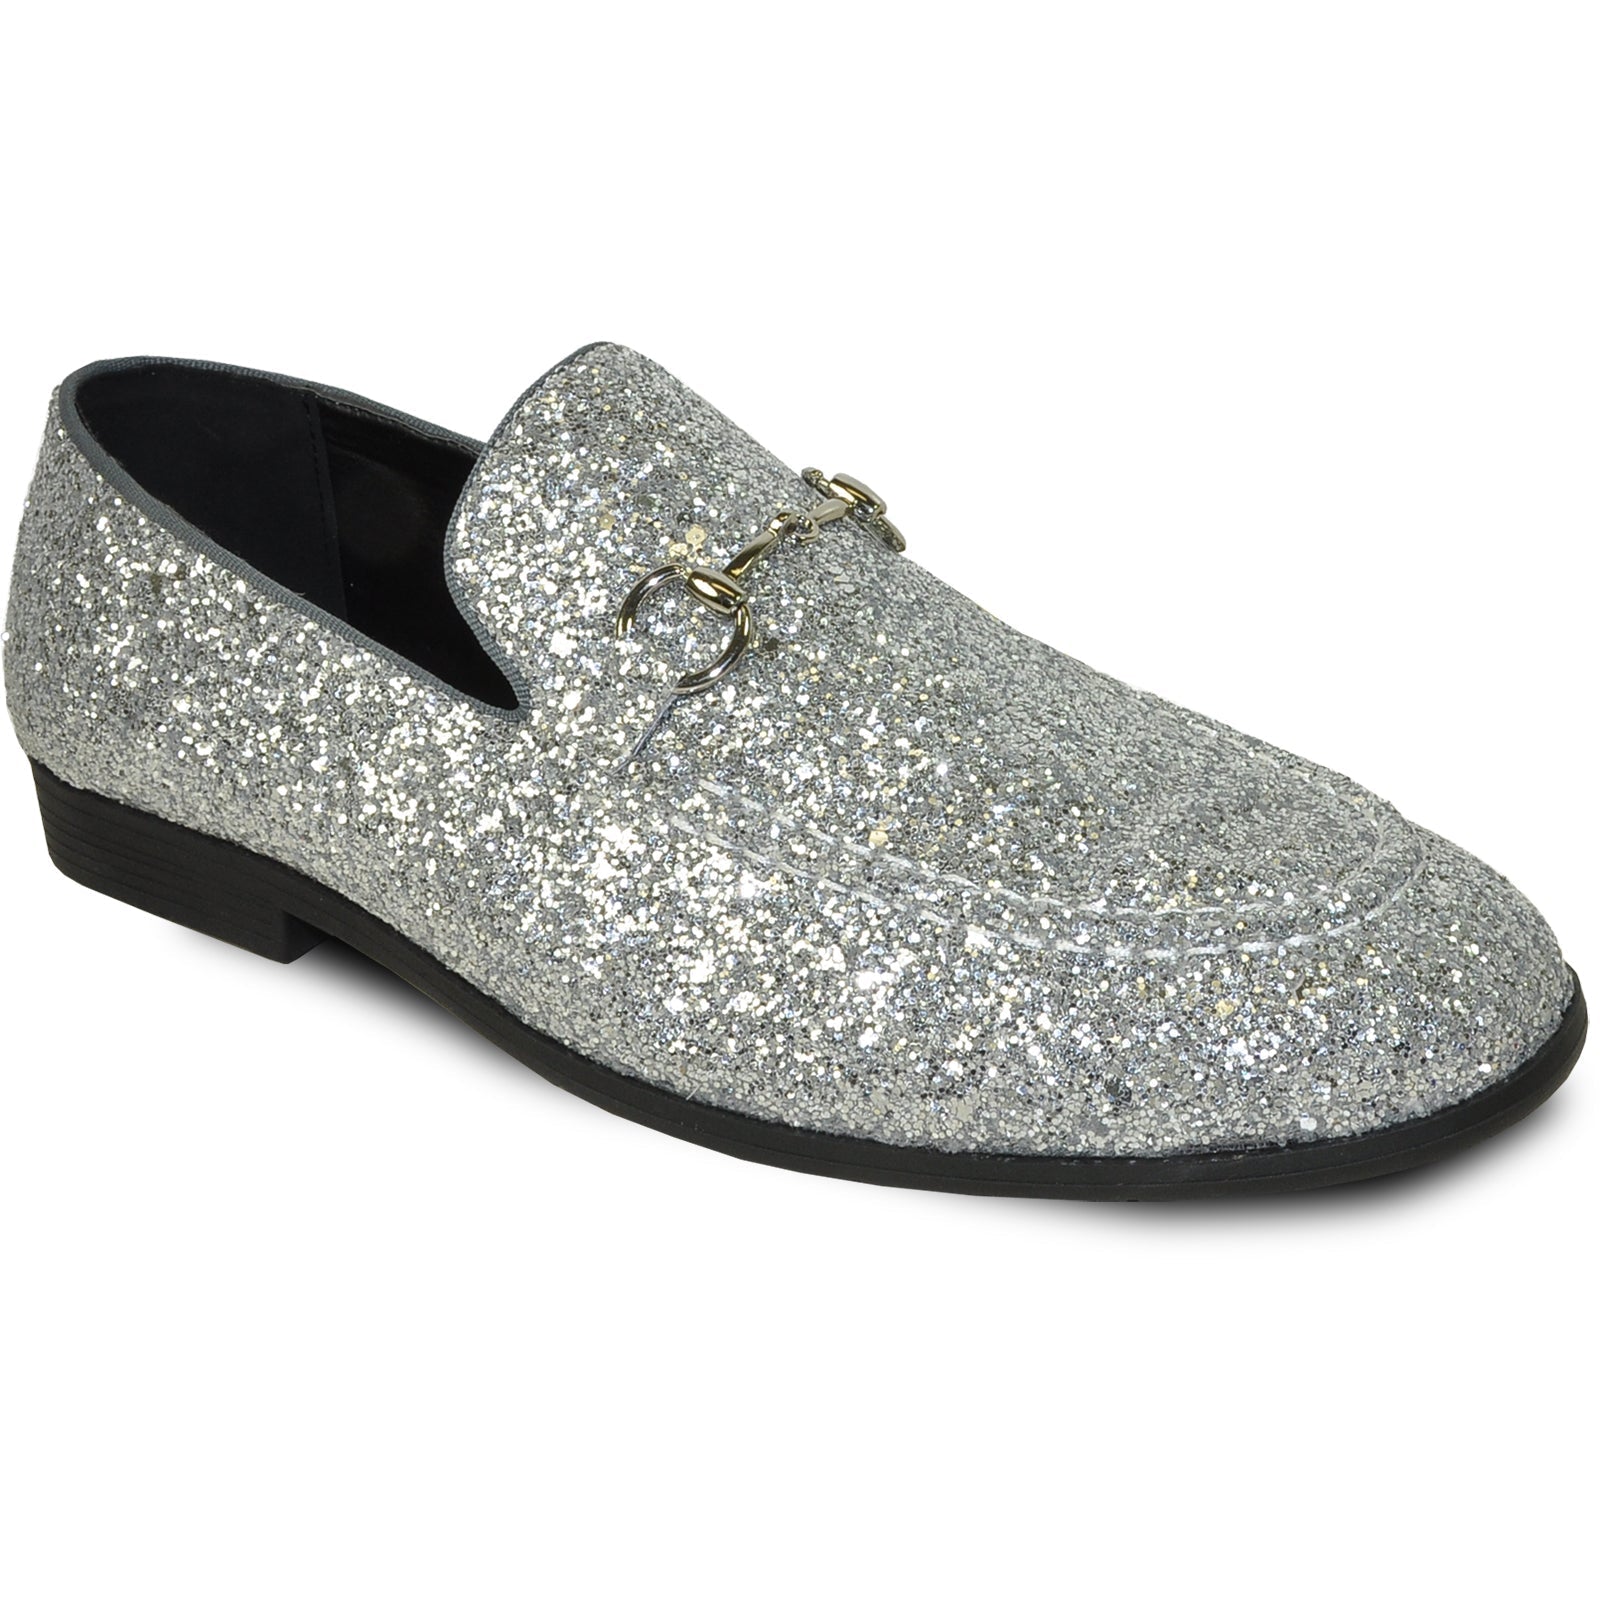 "Silver Grey Sequin Loafer - Modern Men's Prom Tuxedo Footwear"